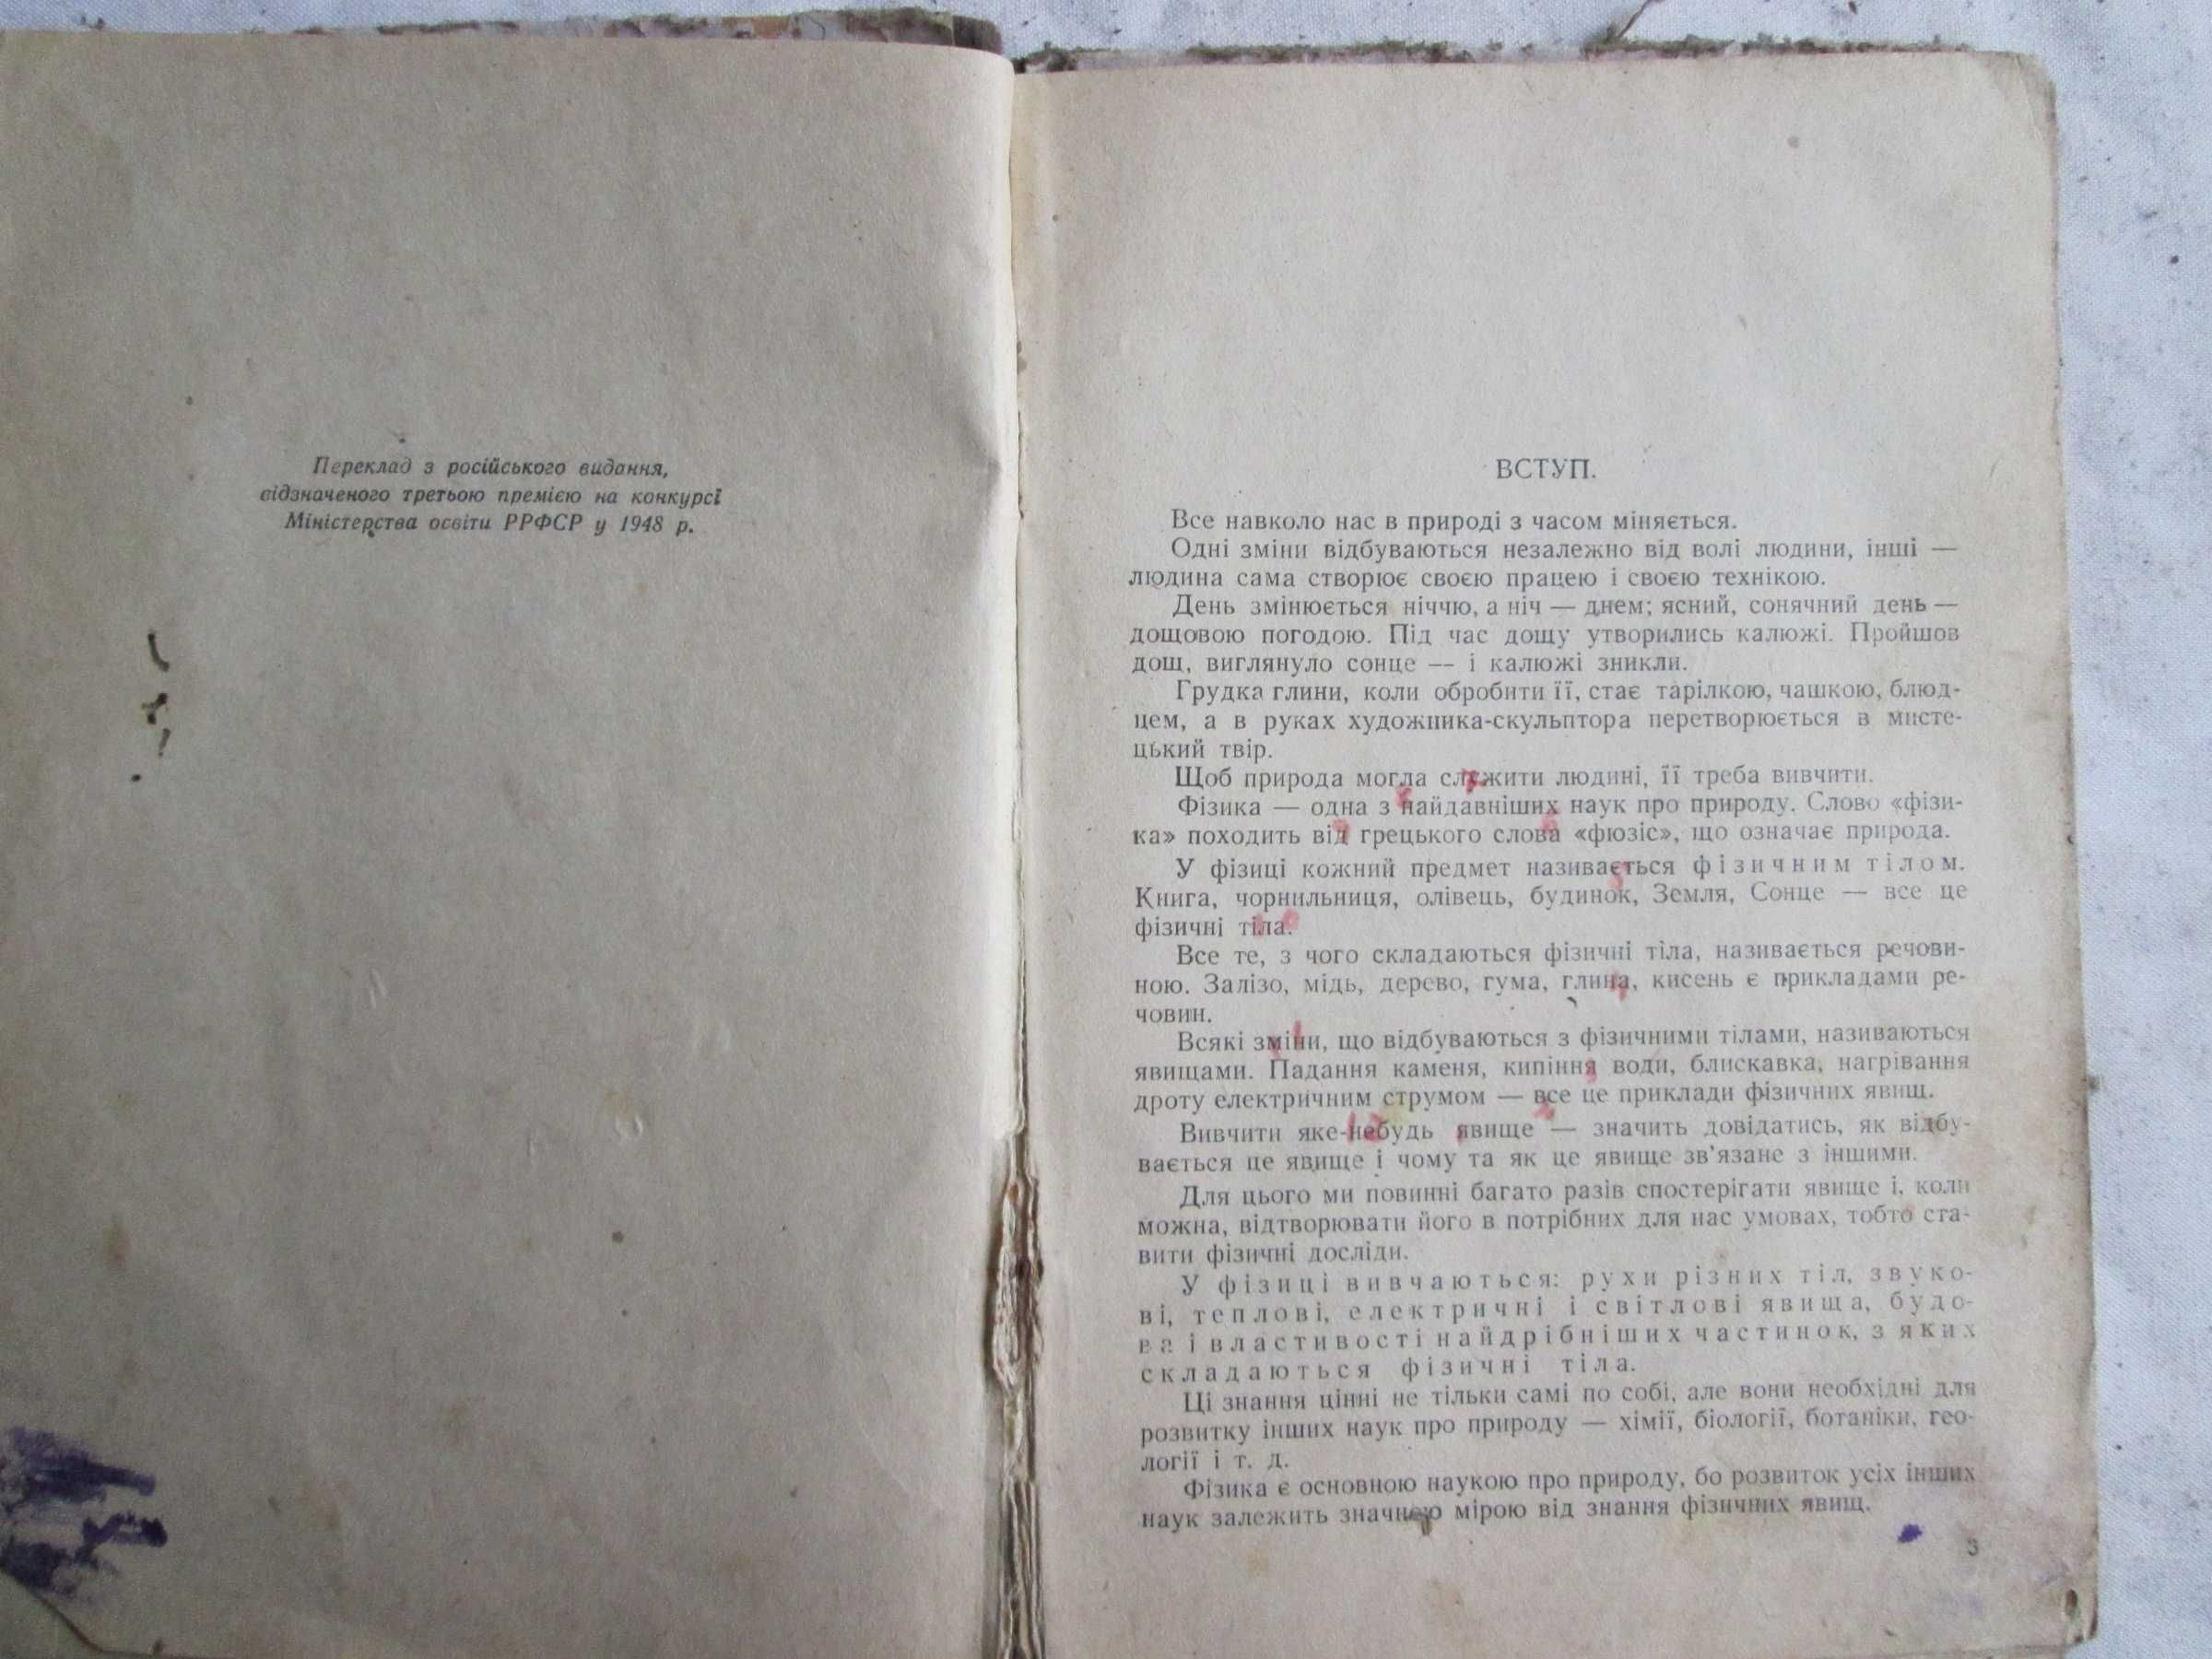 Пьоришкін О.В., Фалеев Г.І., Краукліс В.В. Фізика 1 ч. 6 кл. 1950 р.